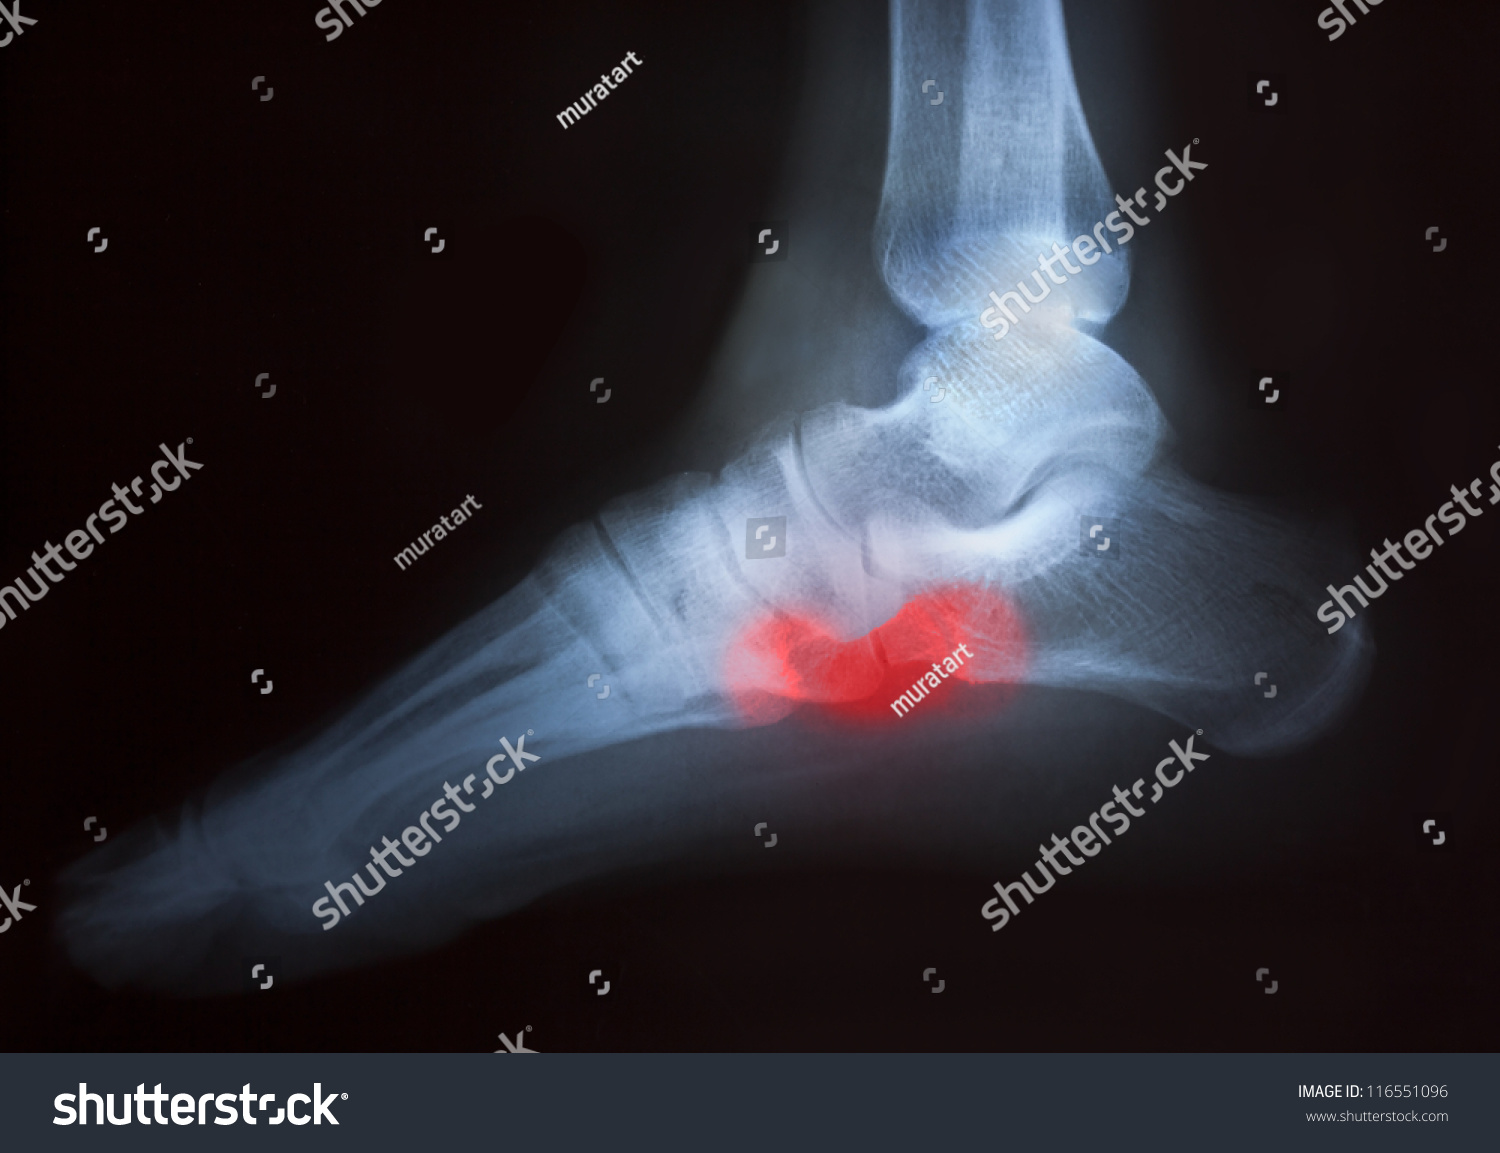 Foot Pain On Xray Stock Photo 116551096 - Shutterstock